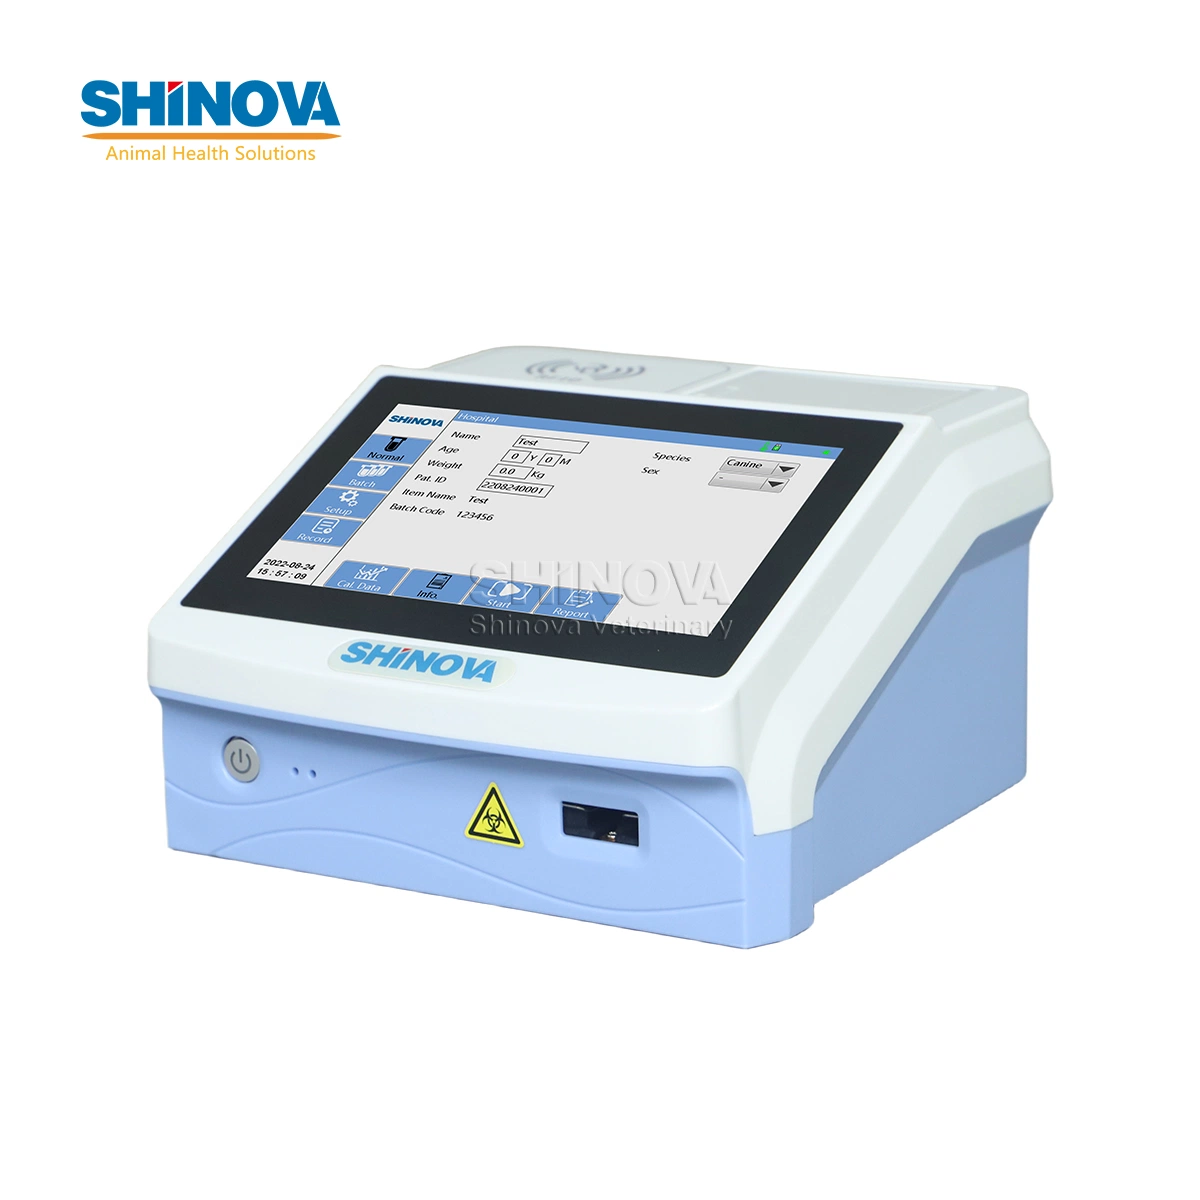 Shinova Analyseur d'immunoessai par fluorescence vétérinaire à écran tactile Analyseur quantitatif d'immunofluorescence vétérinaire (FQ-100)